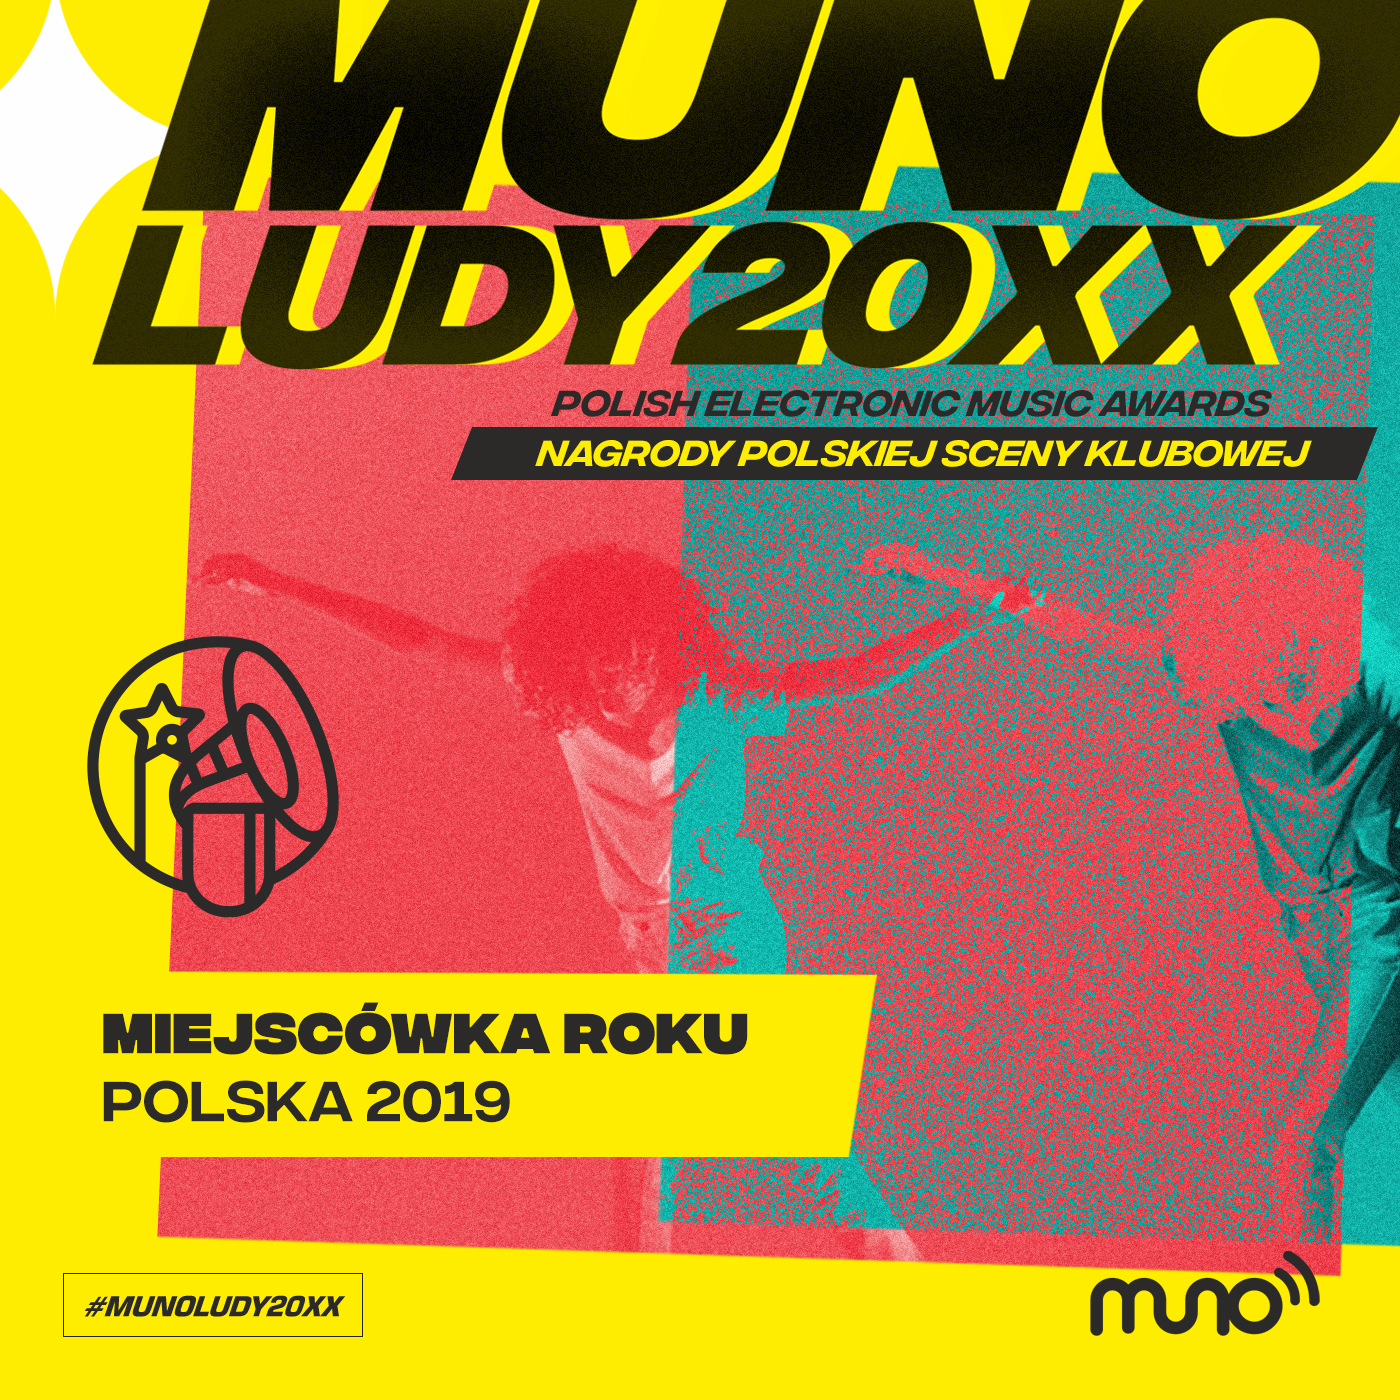 Munoludy 20XX Miejscówka Roku Polska 2019